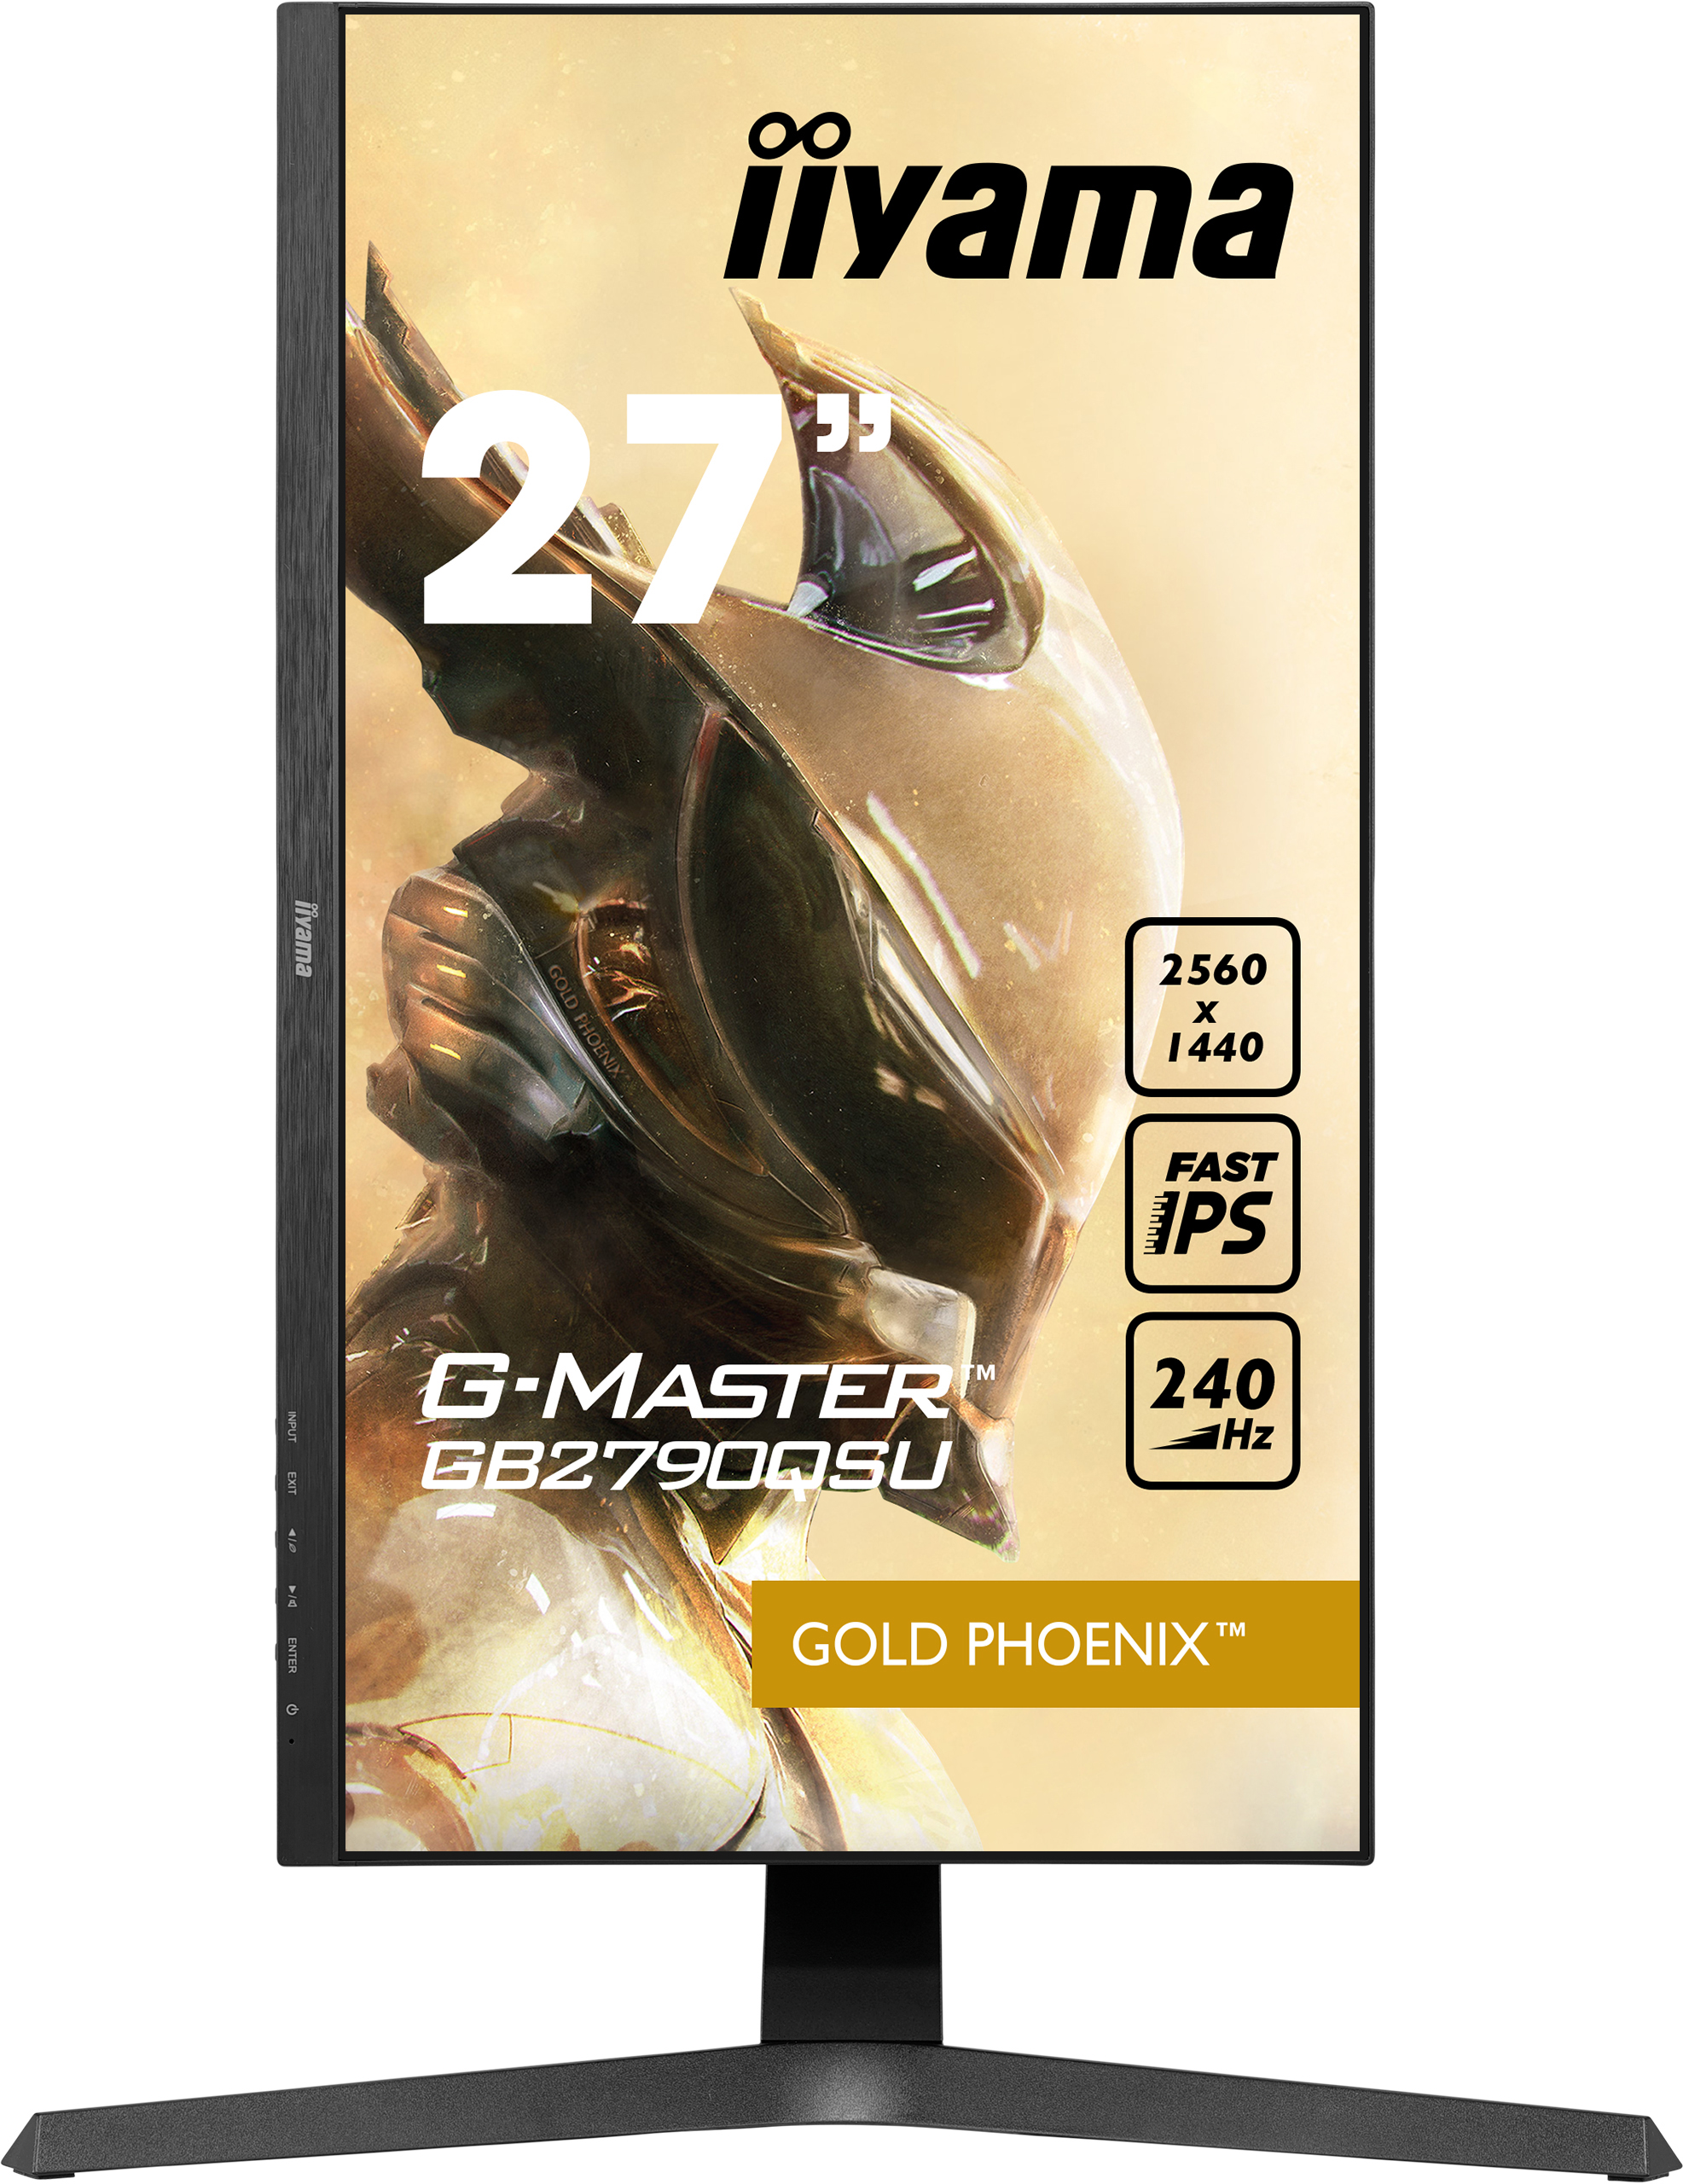 Iiyama G-MASTER GB2790QSU-B1 GOLD PHOENIX | 27" | 2560 x 1440 @240Hz (3.7 megapixel WQHD) | Gaming Monitor